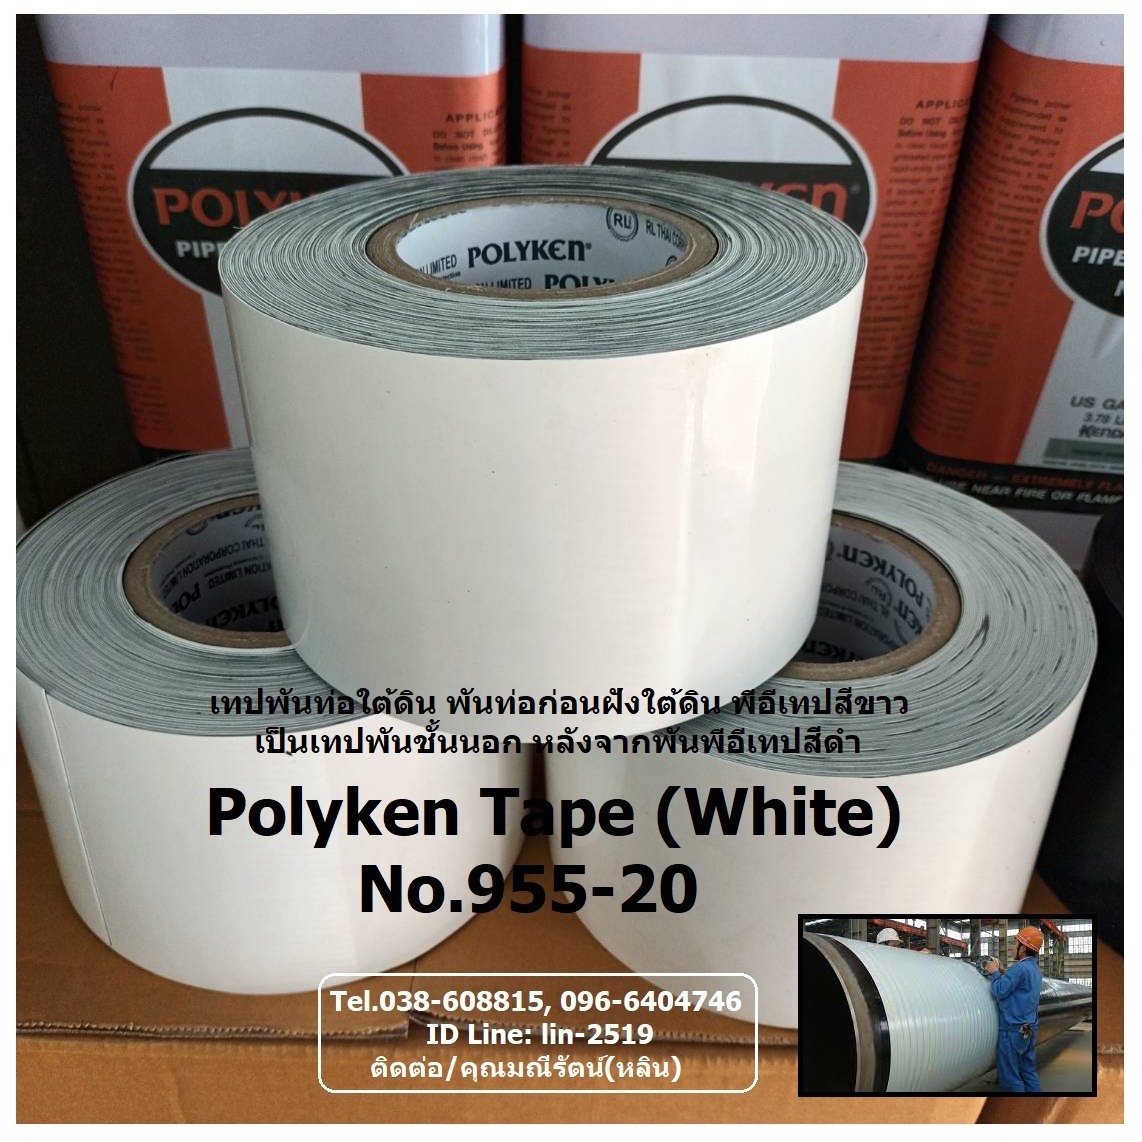 รูปภาพ ​Polyken Wrapping Tape No.955-20 (White) เทปพันท่อใต้ดินสีขาว พันชั้นนอกหลังจากพันเทปสีดำชั้นแรก